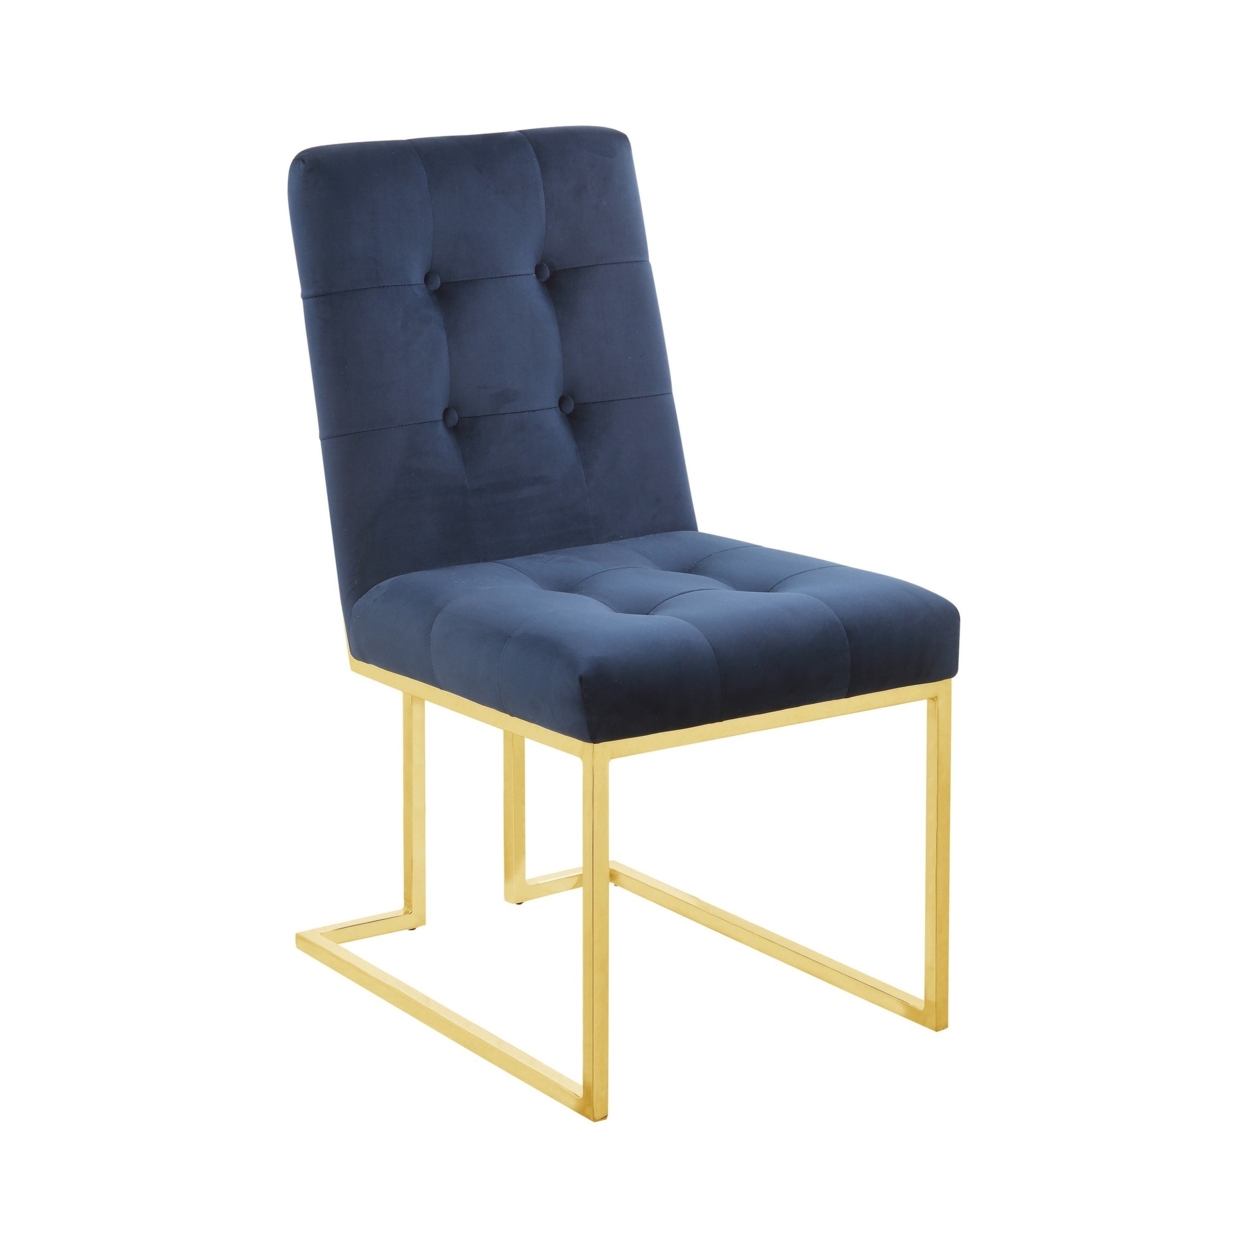 19 Inch Modern Dining Chair, Set Of 2, Blue Velvet Fabric, Gold Metal Frame- Saltoro Sherpi